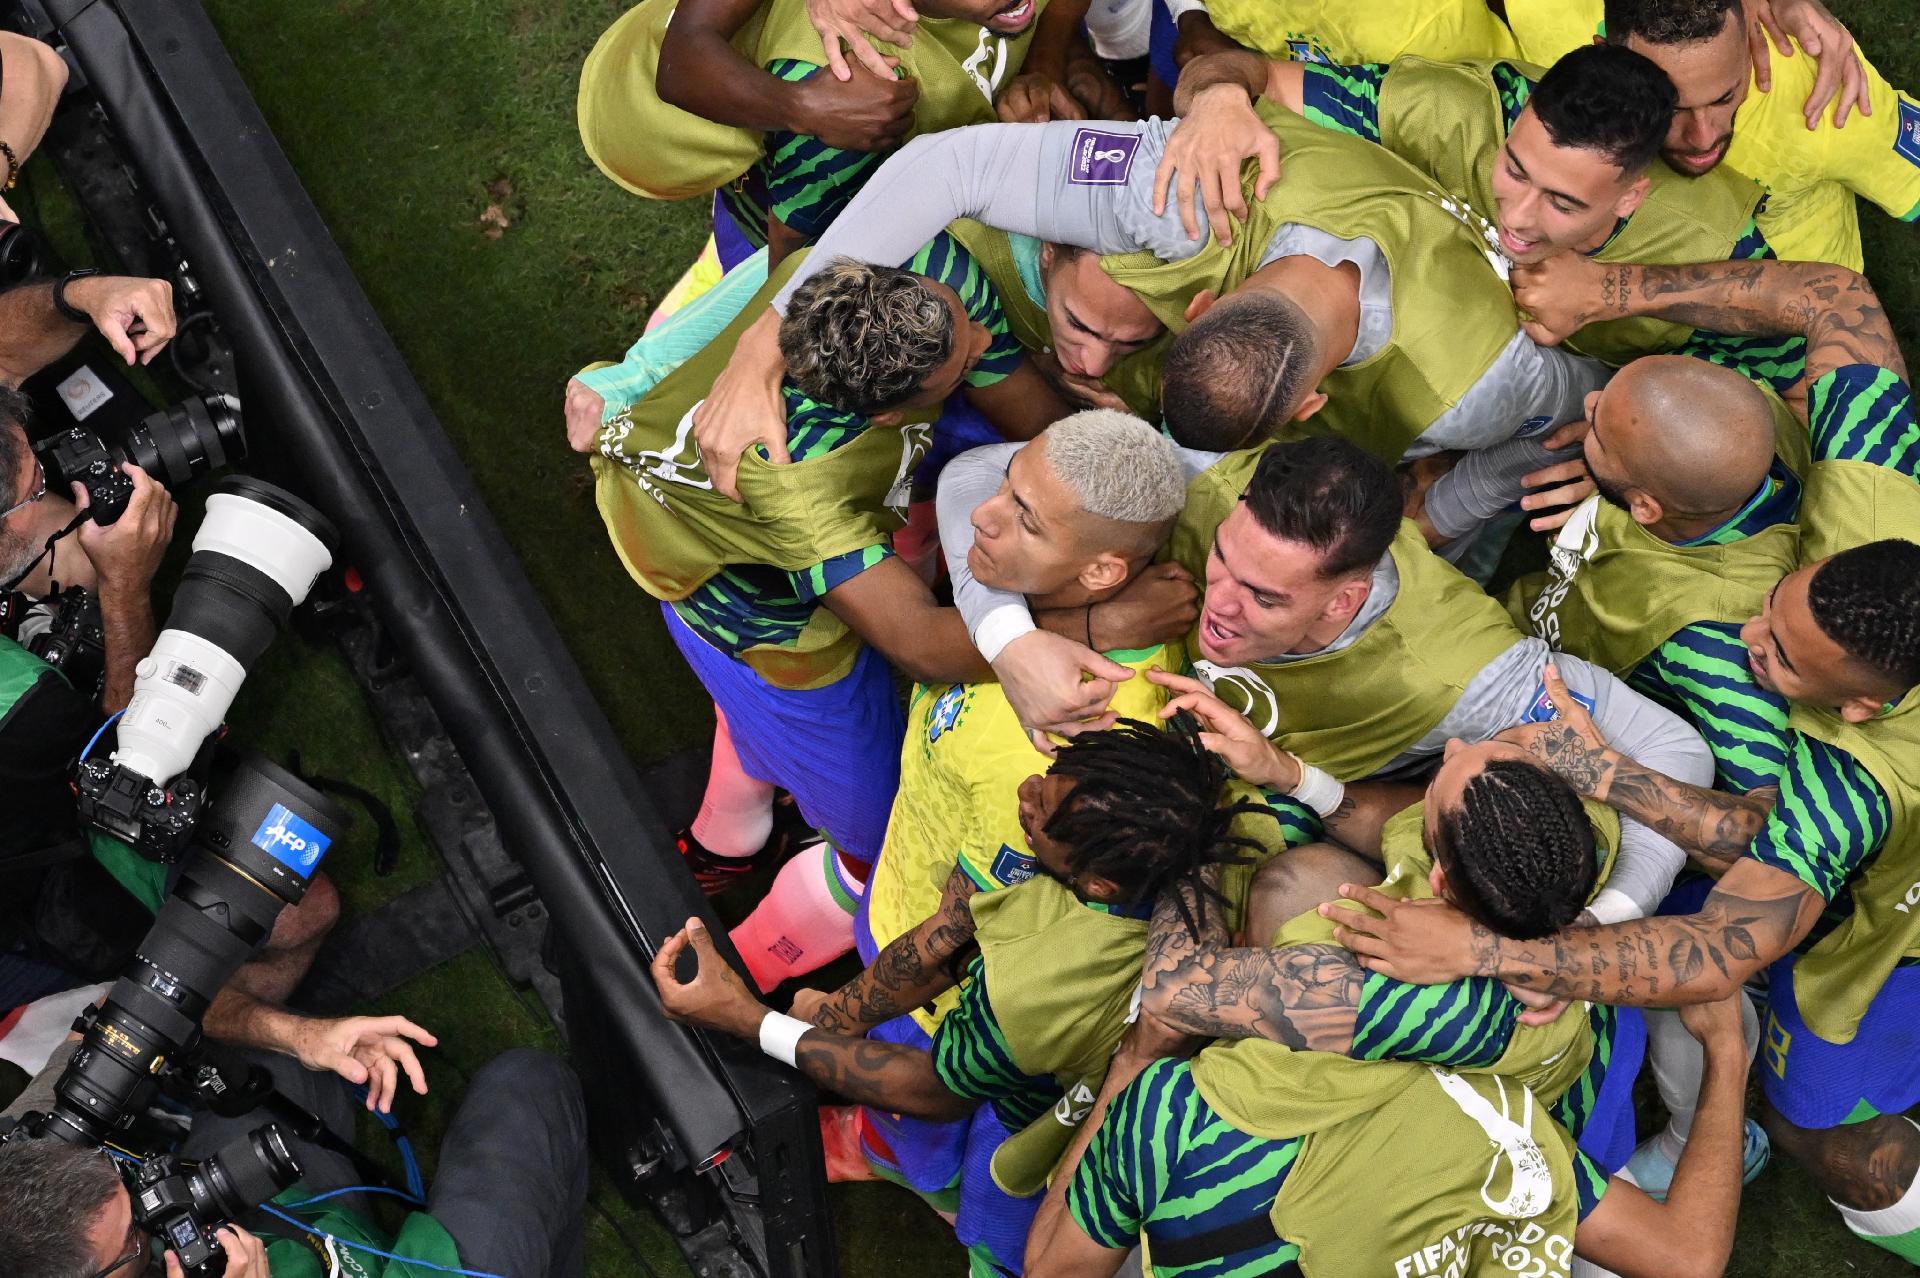 Seleção brasileira chega a 20 jogos sem derrota em estreias de Copa -  24/11/2022 - UOL Esporte